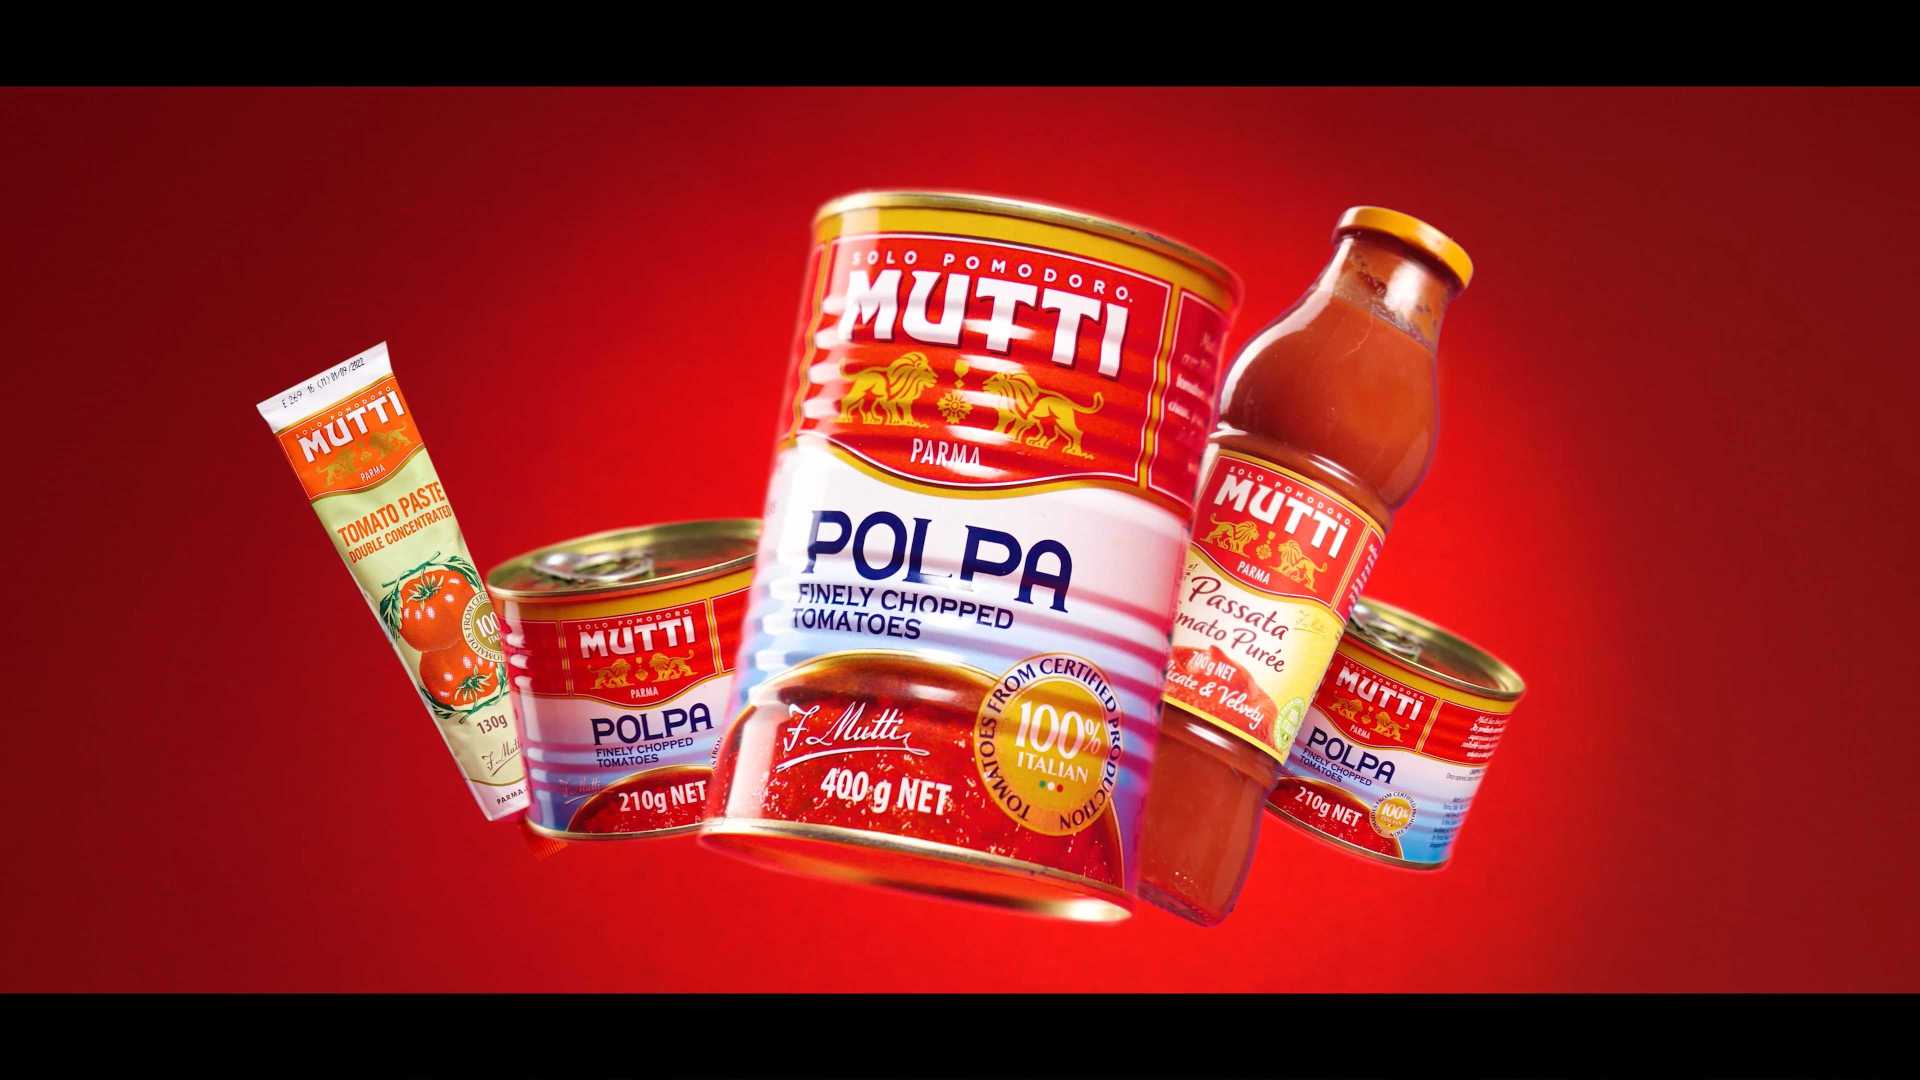 三段式创意广告短片——新鲜的MUTTI全系列番茄酱